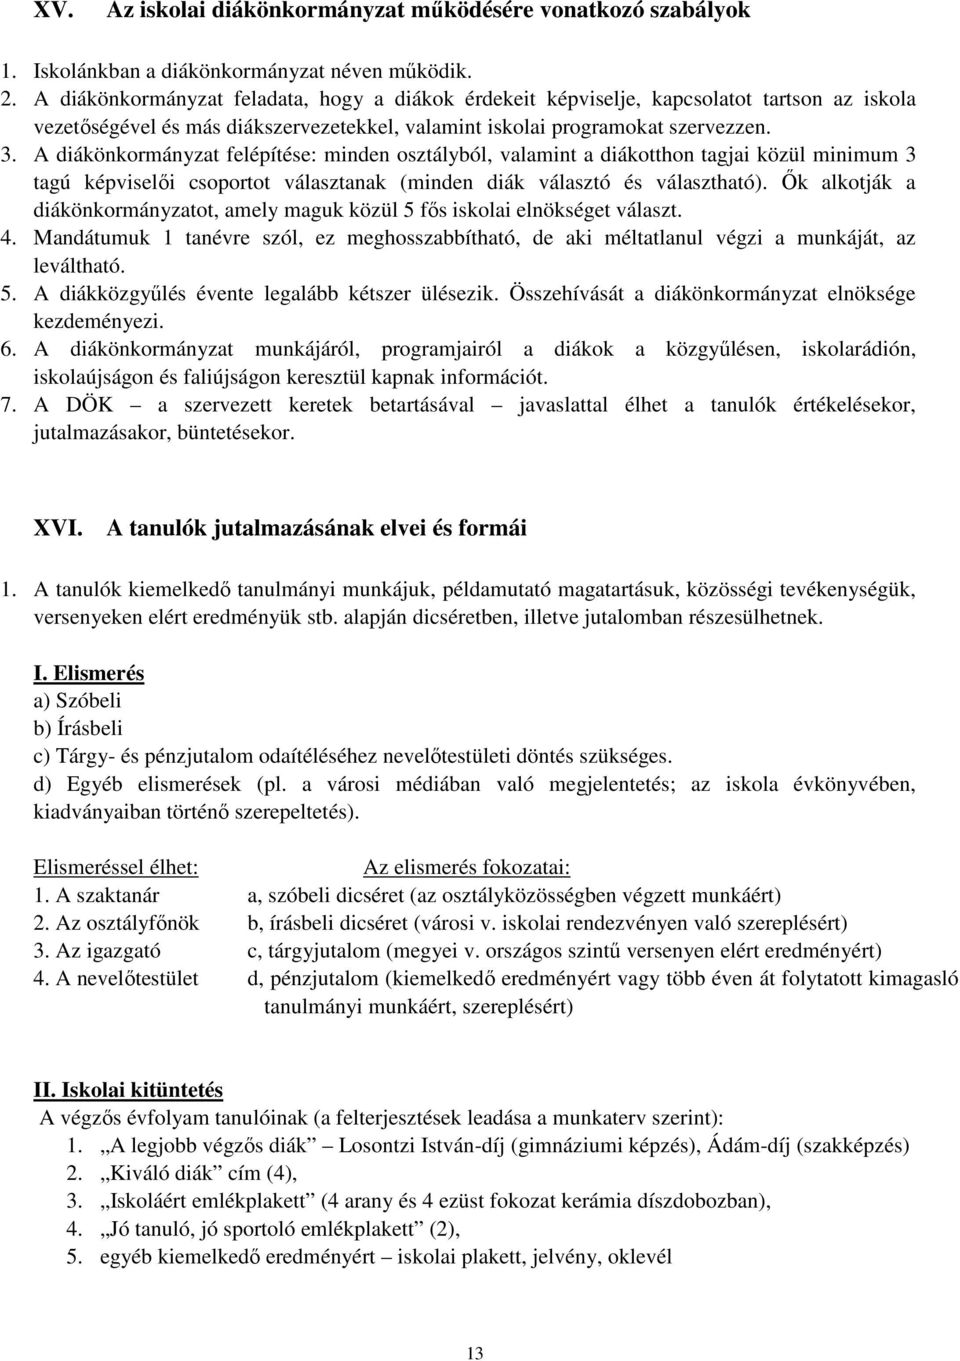 A diákönkormányzat felépítése: minden osztályból, valamint a diákotthon tagjai közül minimum 3 tagú képviselıi csoportot választanak (minden diák választó és választható).